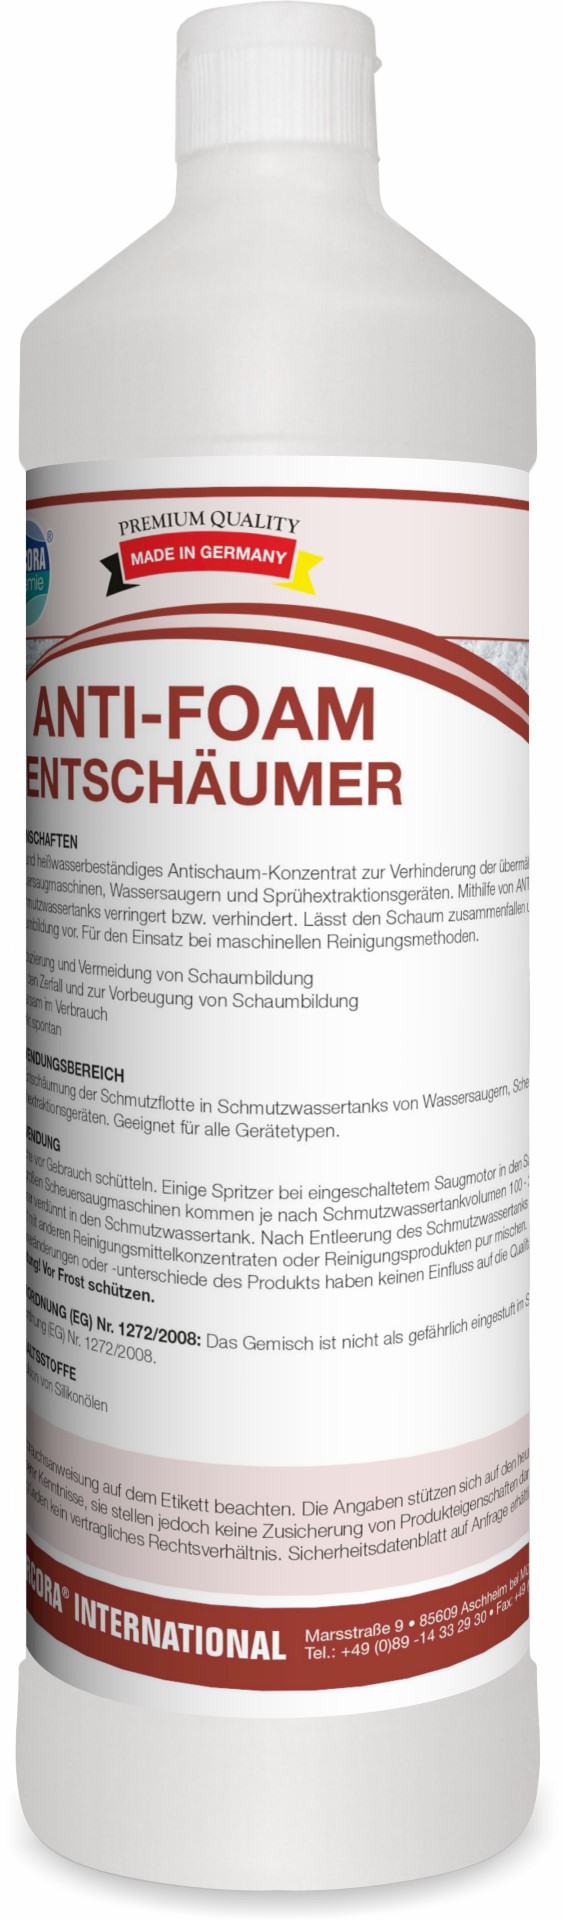 Anti-Foam | Entschäumer | 1 Liter